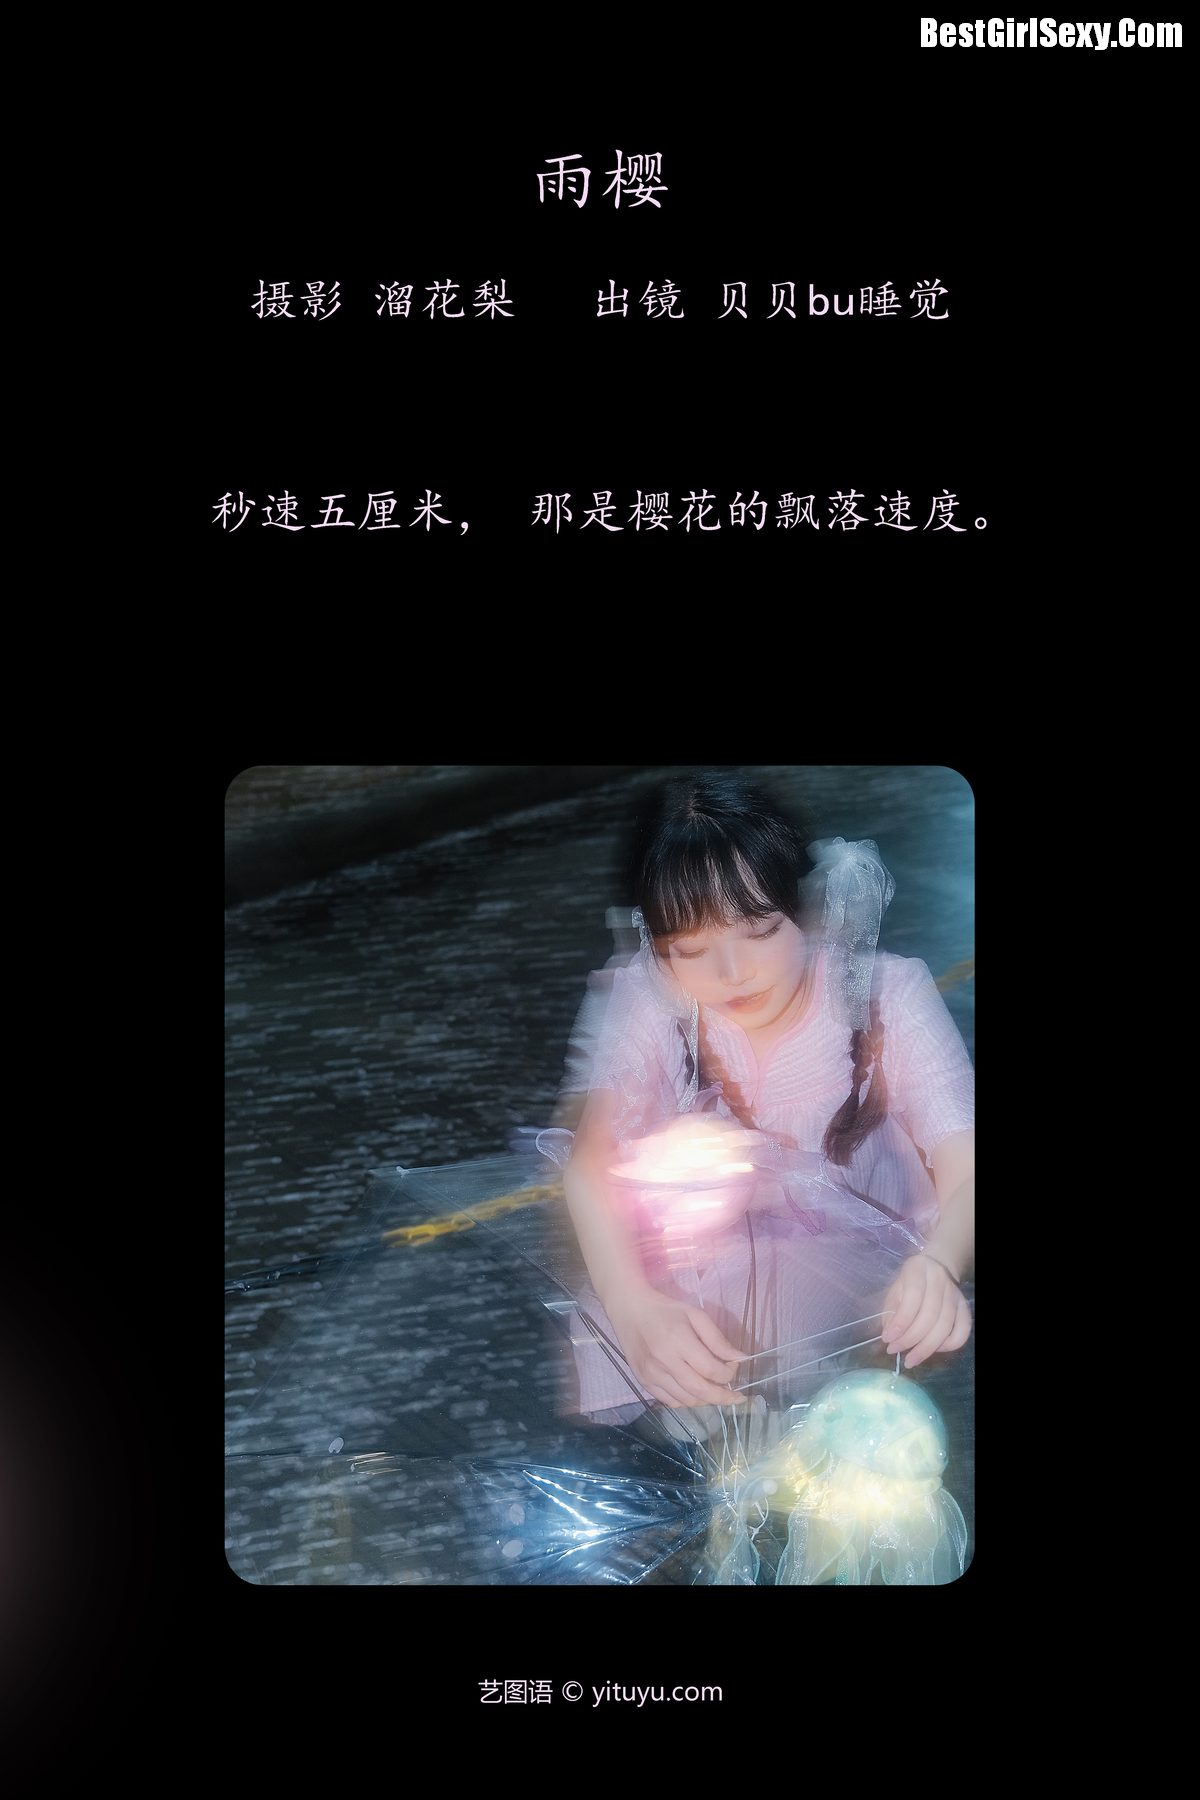 YiTuYu艺图语 Vol 4015 Bei Bei Bu Shu Jiao 0001 6806464025.jpg